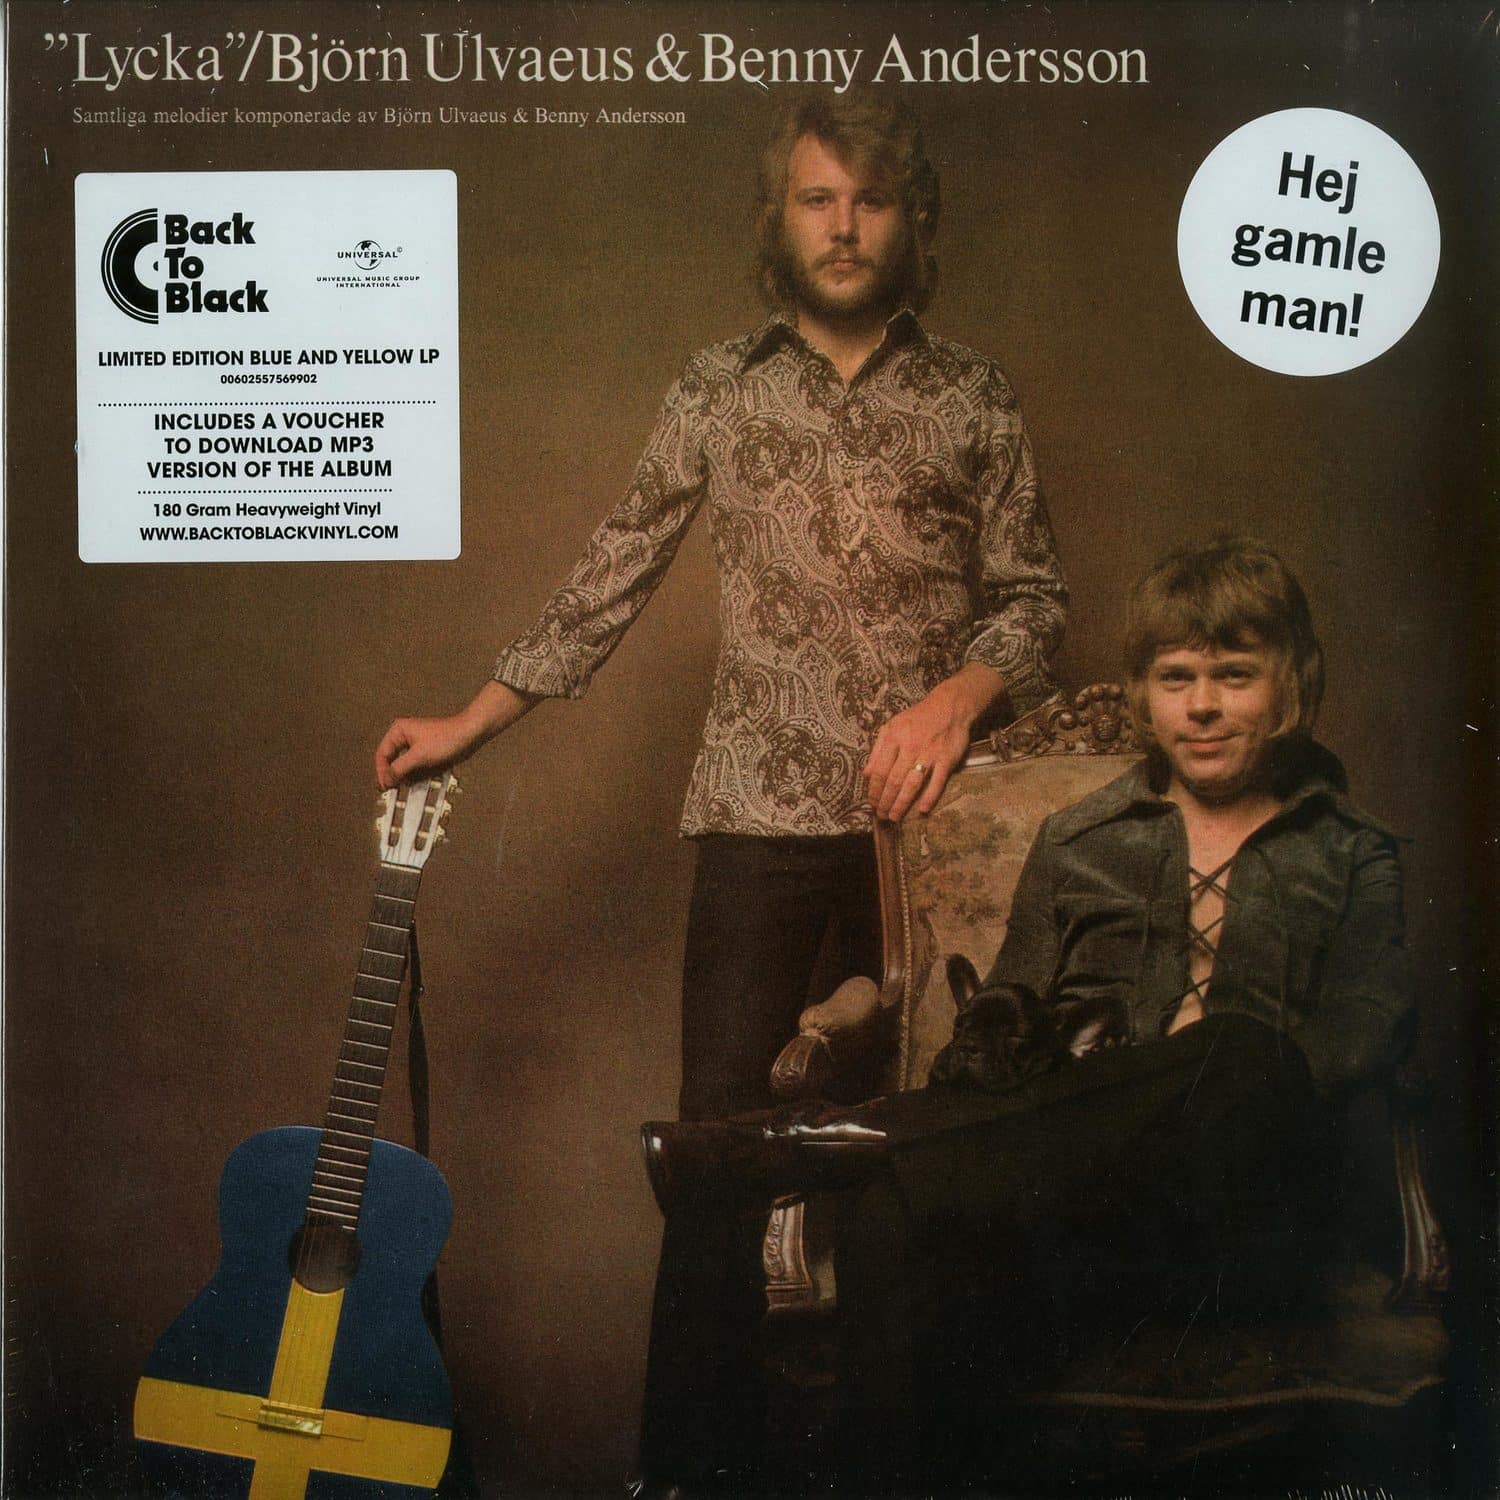 Bjorn Ulvaeus & Benny Andersson - LYCKA 